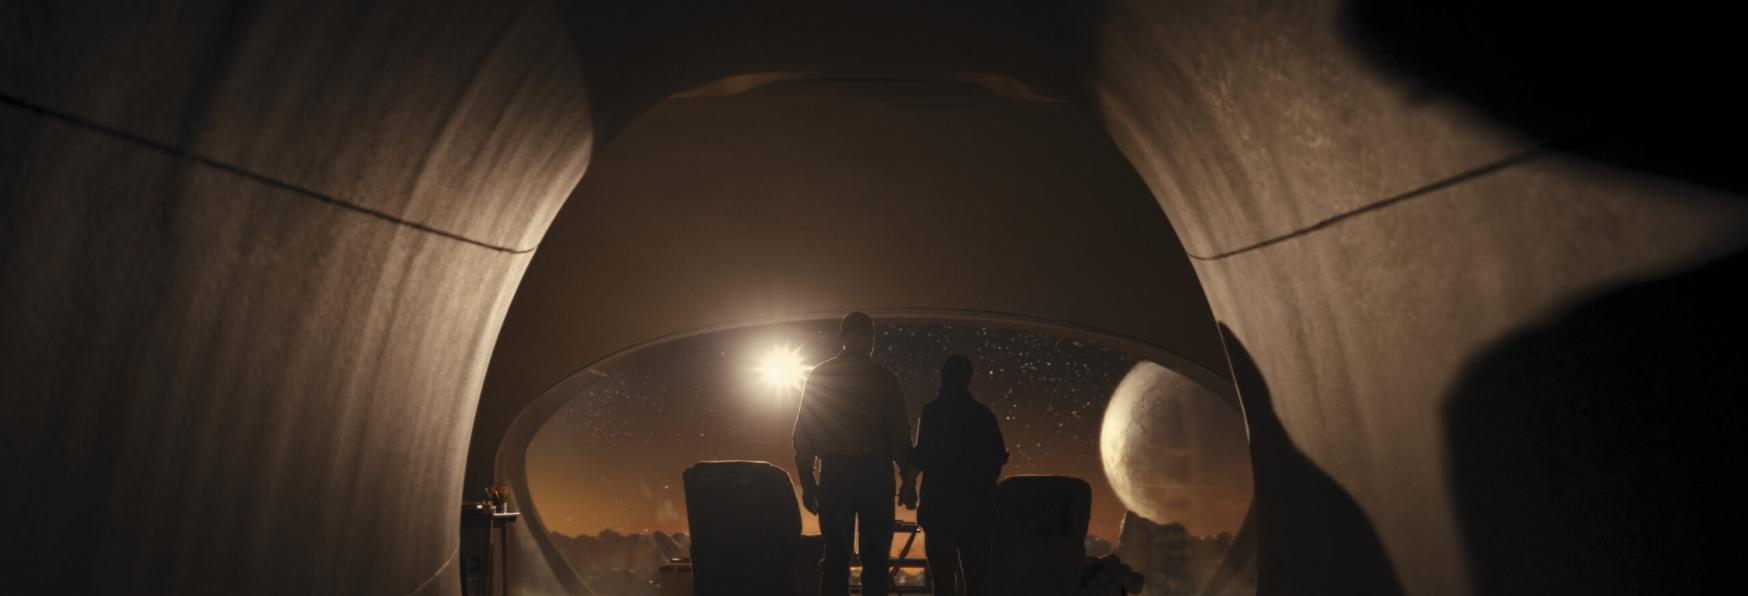 Night Sky: Amazon rilascia il Trailer della nuova Serie TV Sci-fi con J. K. Simmons